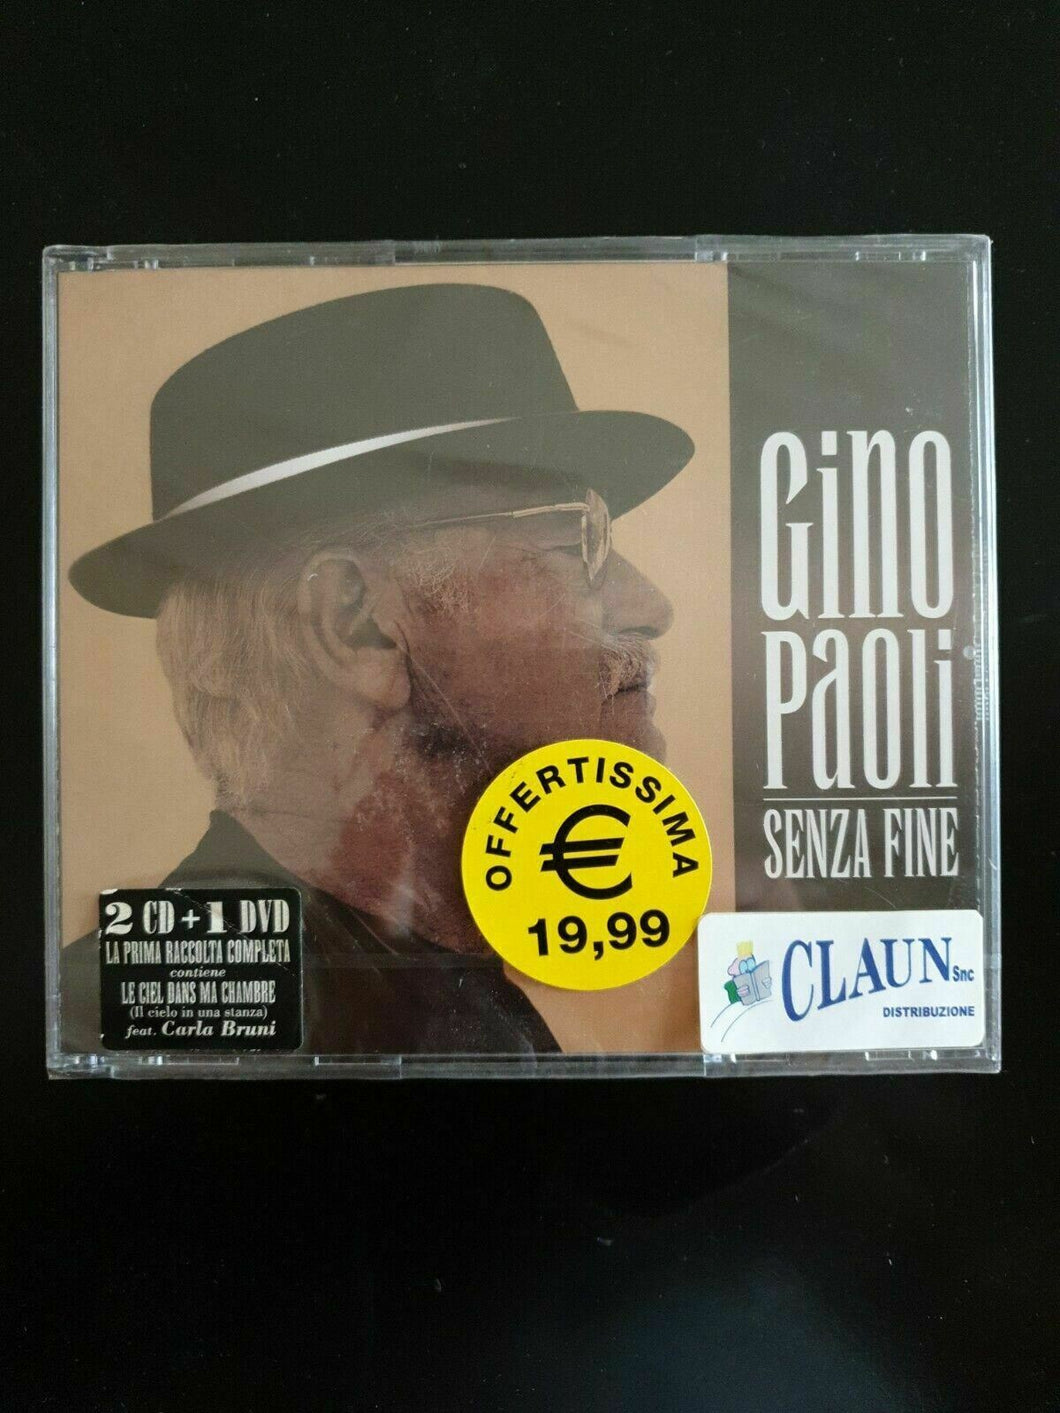 GINO PAOLI - SENZA FINE -  2 CD + 1 DVD  Nuovo Sigillato